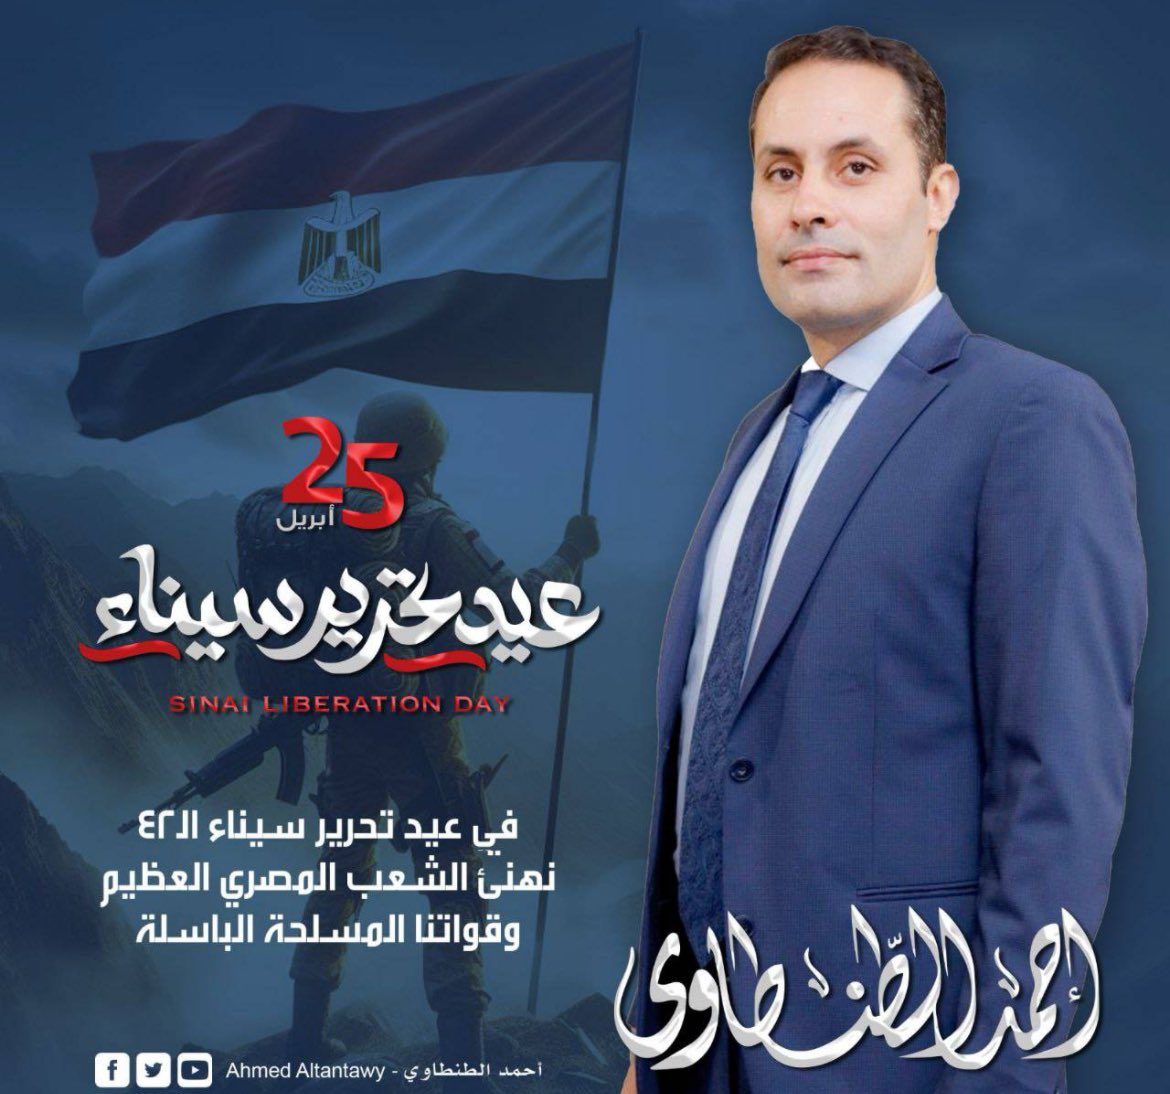 في عيد تحرير سيناء الـ ٤٢ نهنئ الشعب المصري العظيم وقواتنا المسلحة الباسلة.